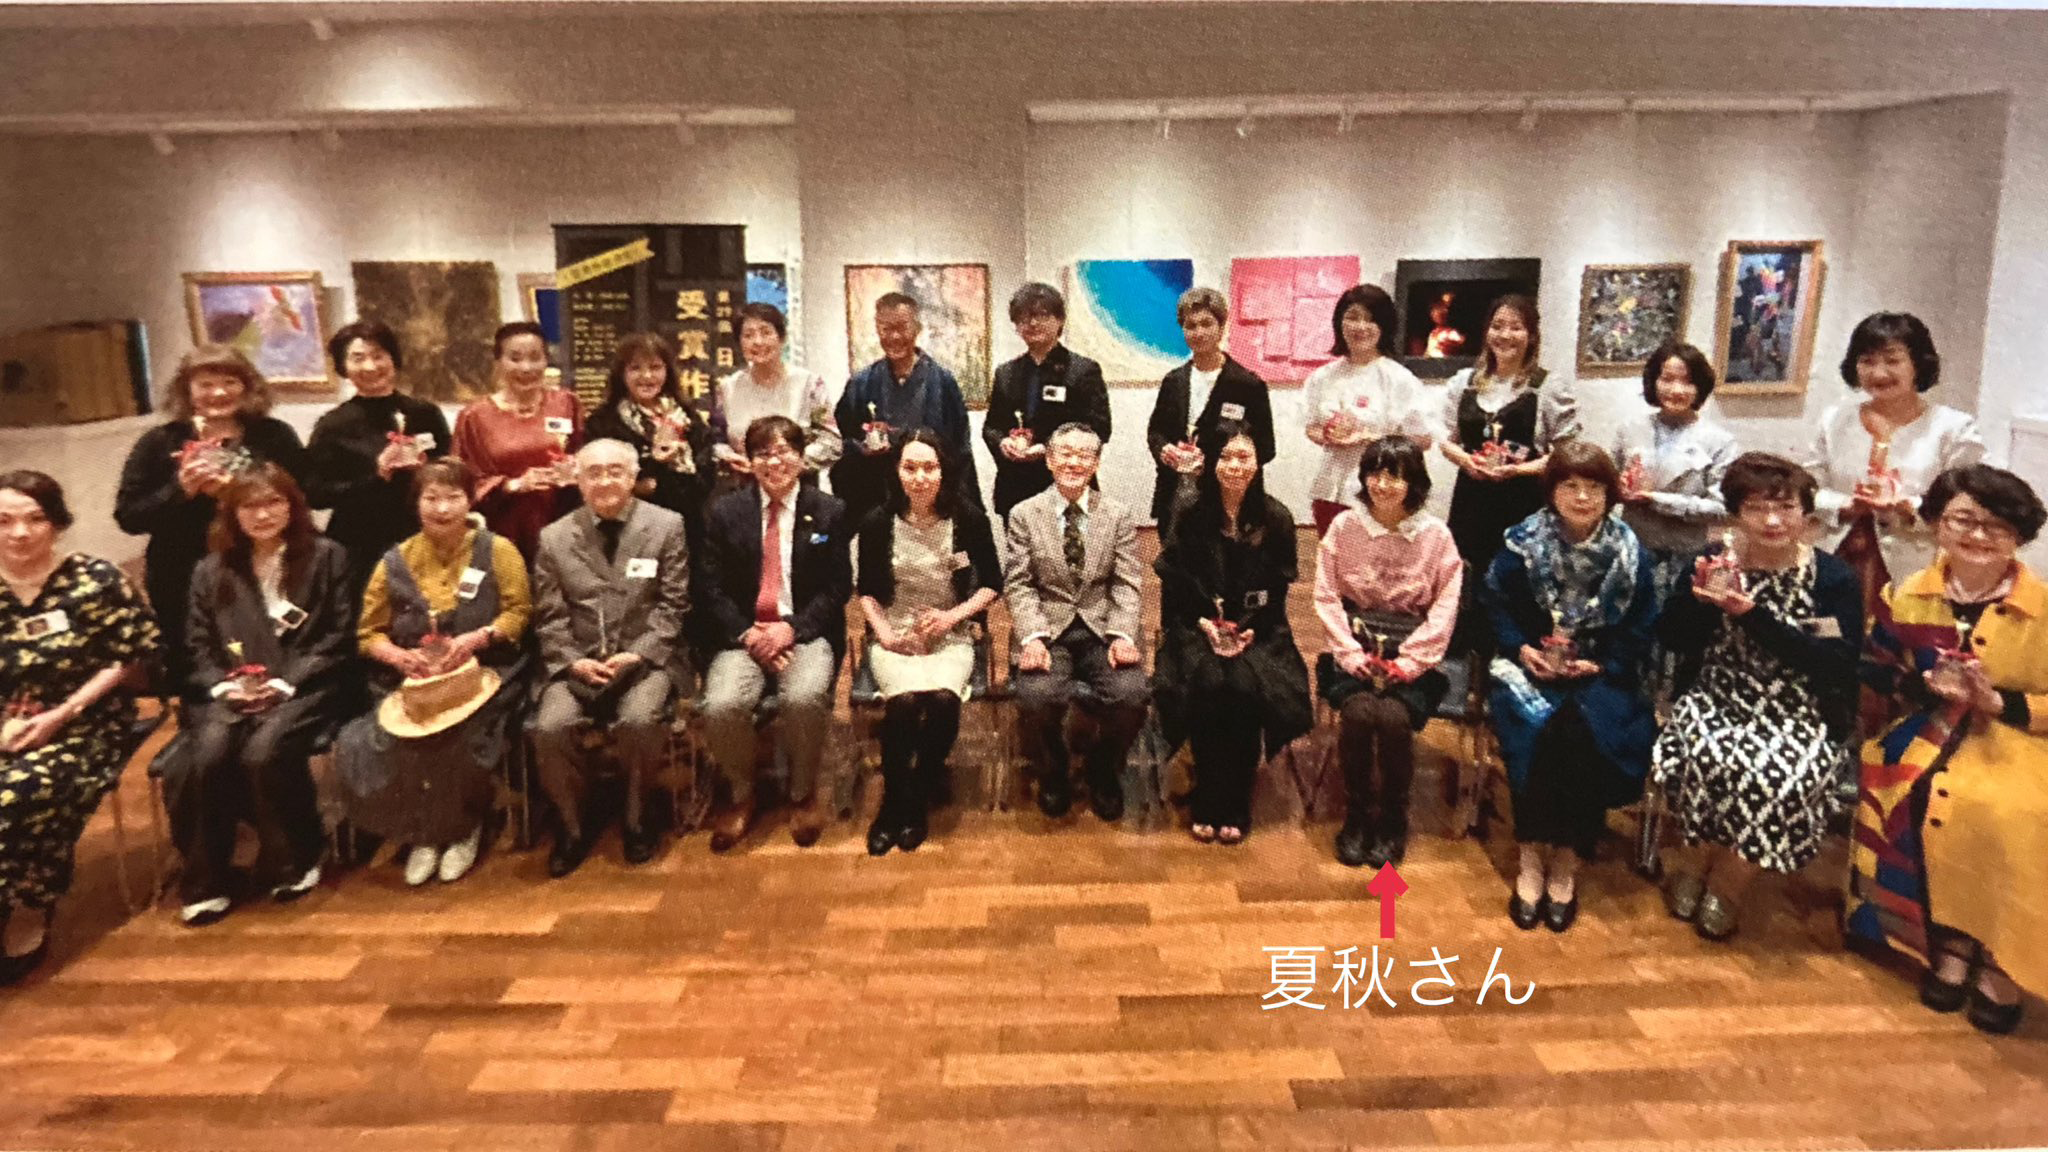 文春ギャラリーにて（24/4/22）第29回 日本の美術 受賞作家展、展覧会場の様子